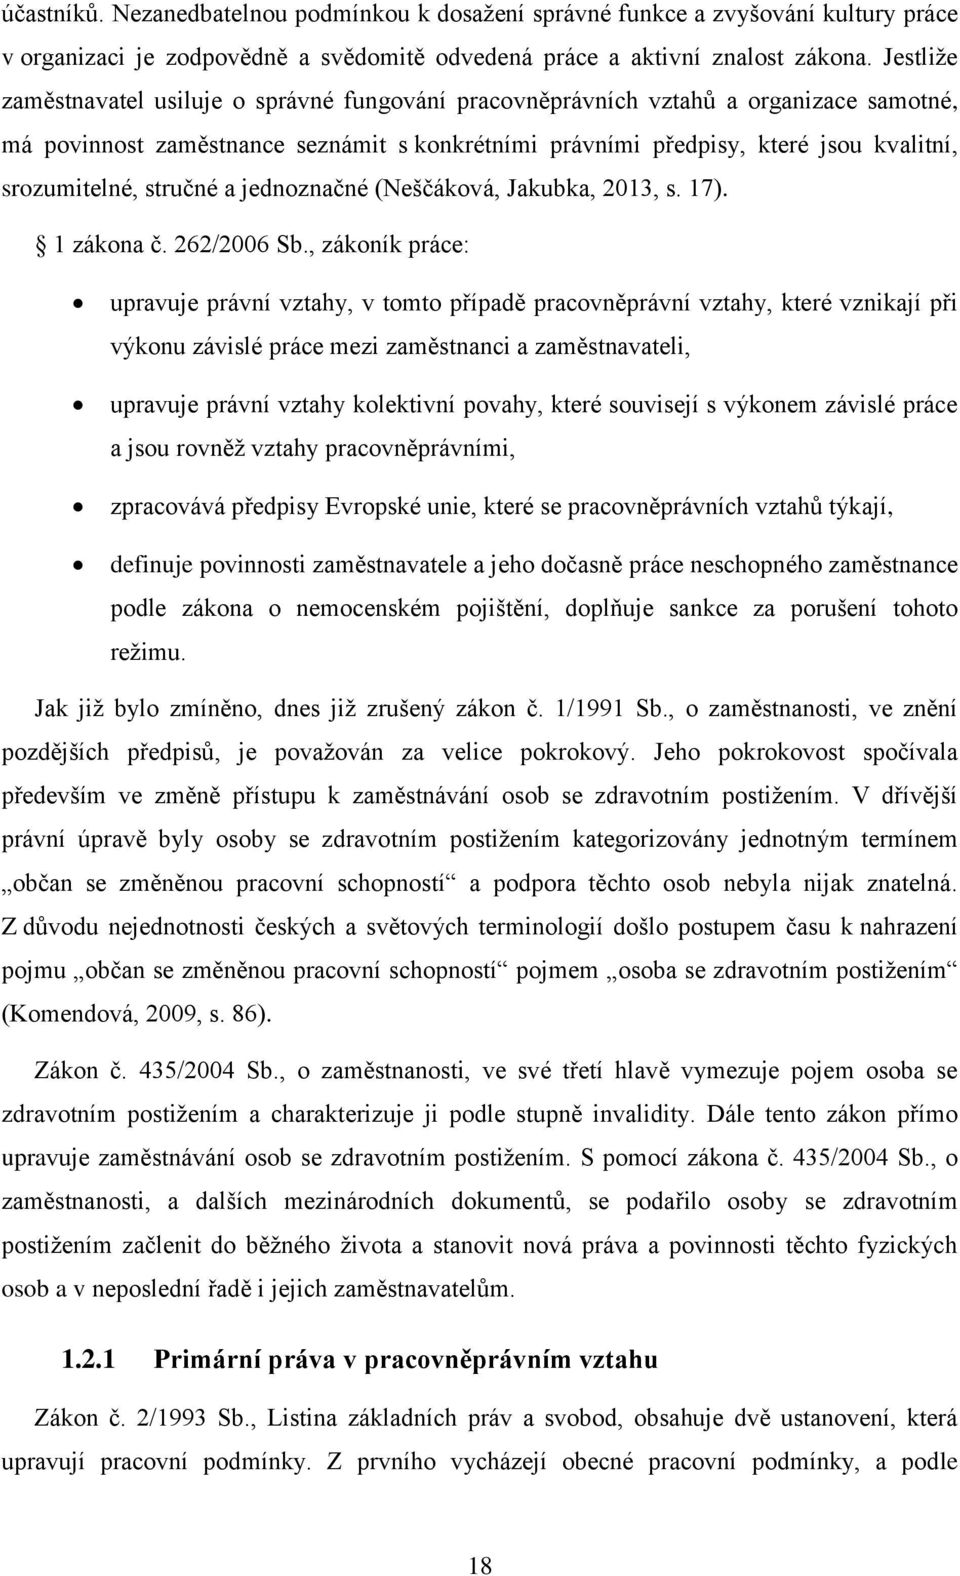 stručné a jednoznačné (Neščáková, Jakubka, 2013, s. 17). 1 zákona č. 262/2006 Sb.